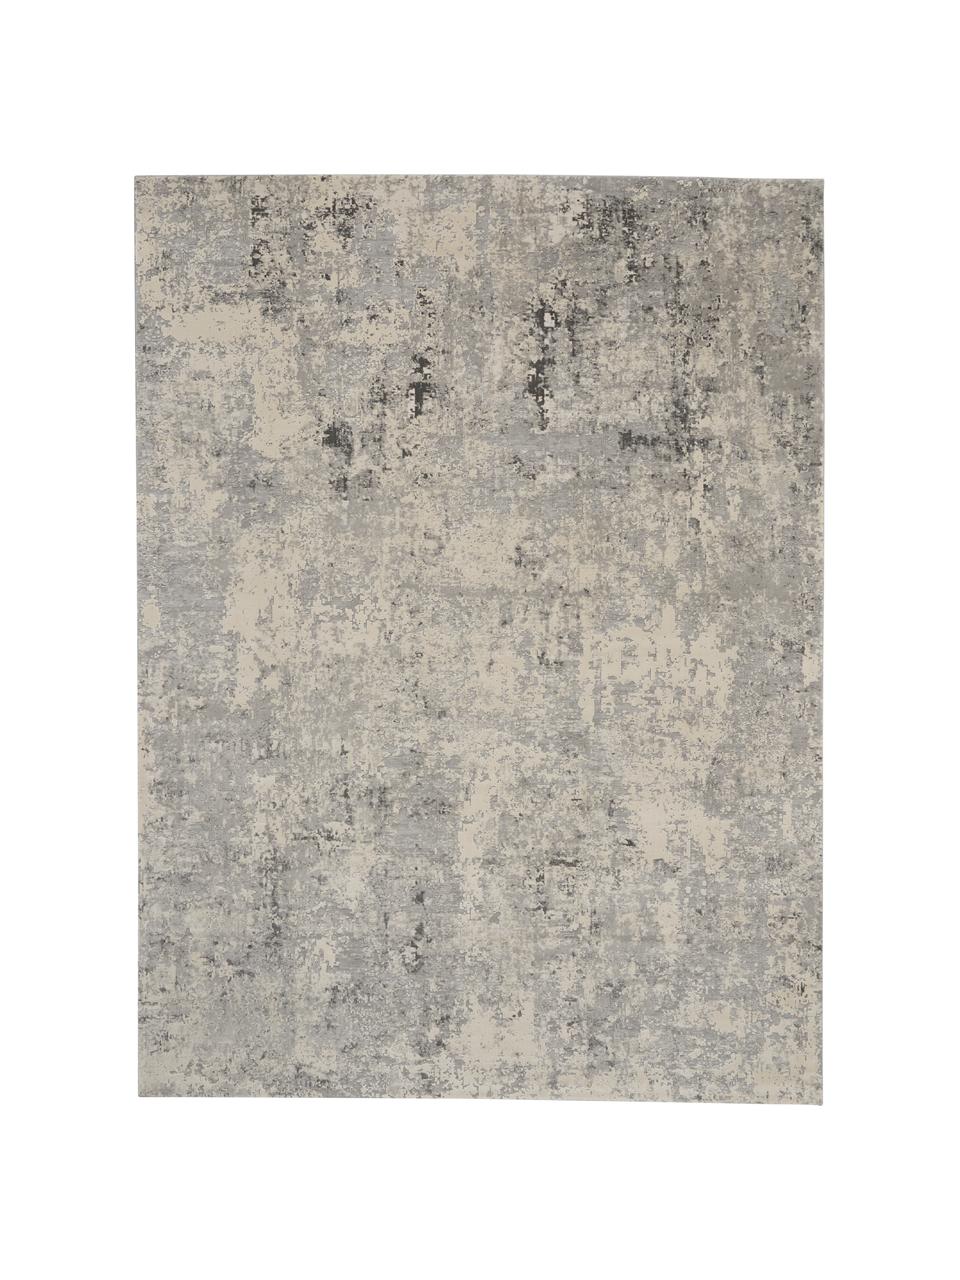 Teppich Rustic in Grau/Beige mit Hoch-Tief-Struktur, Flor: 51% Polypropylen, 49% Pol, Grau, Beige, B 240 x L 320 cm (Größe L)